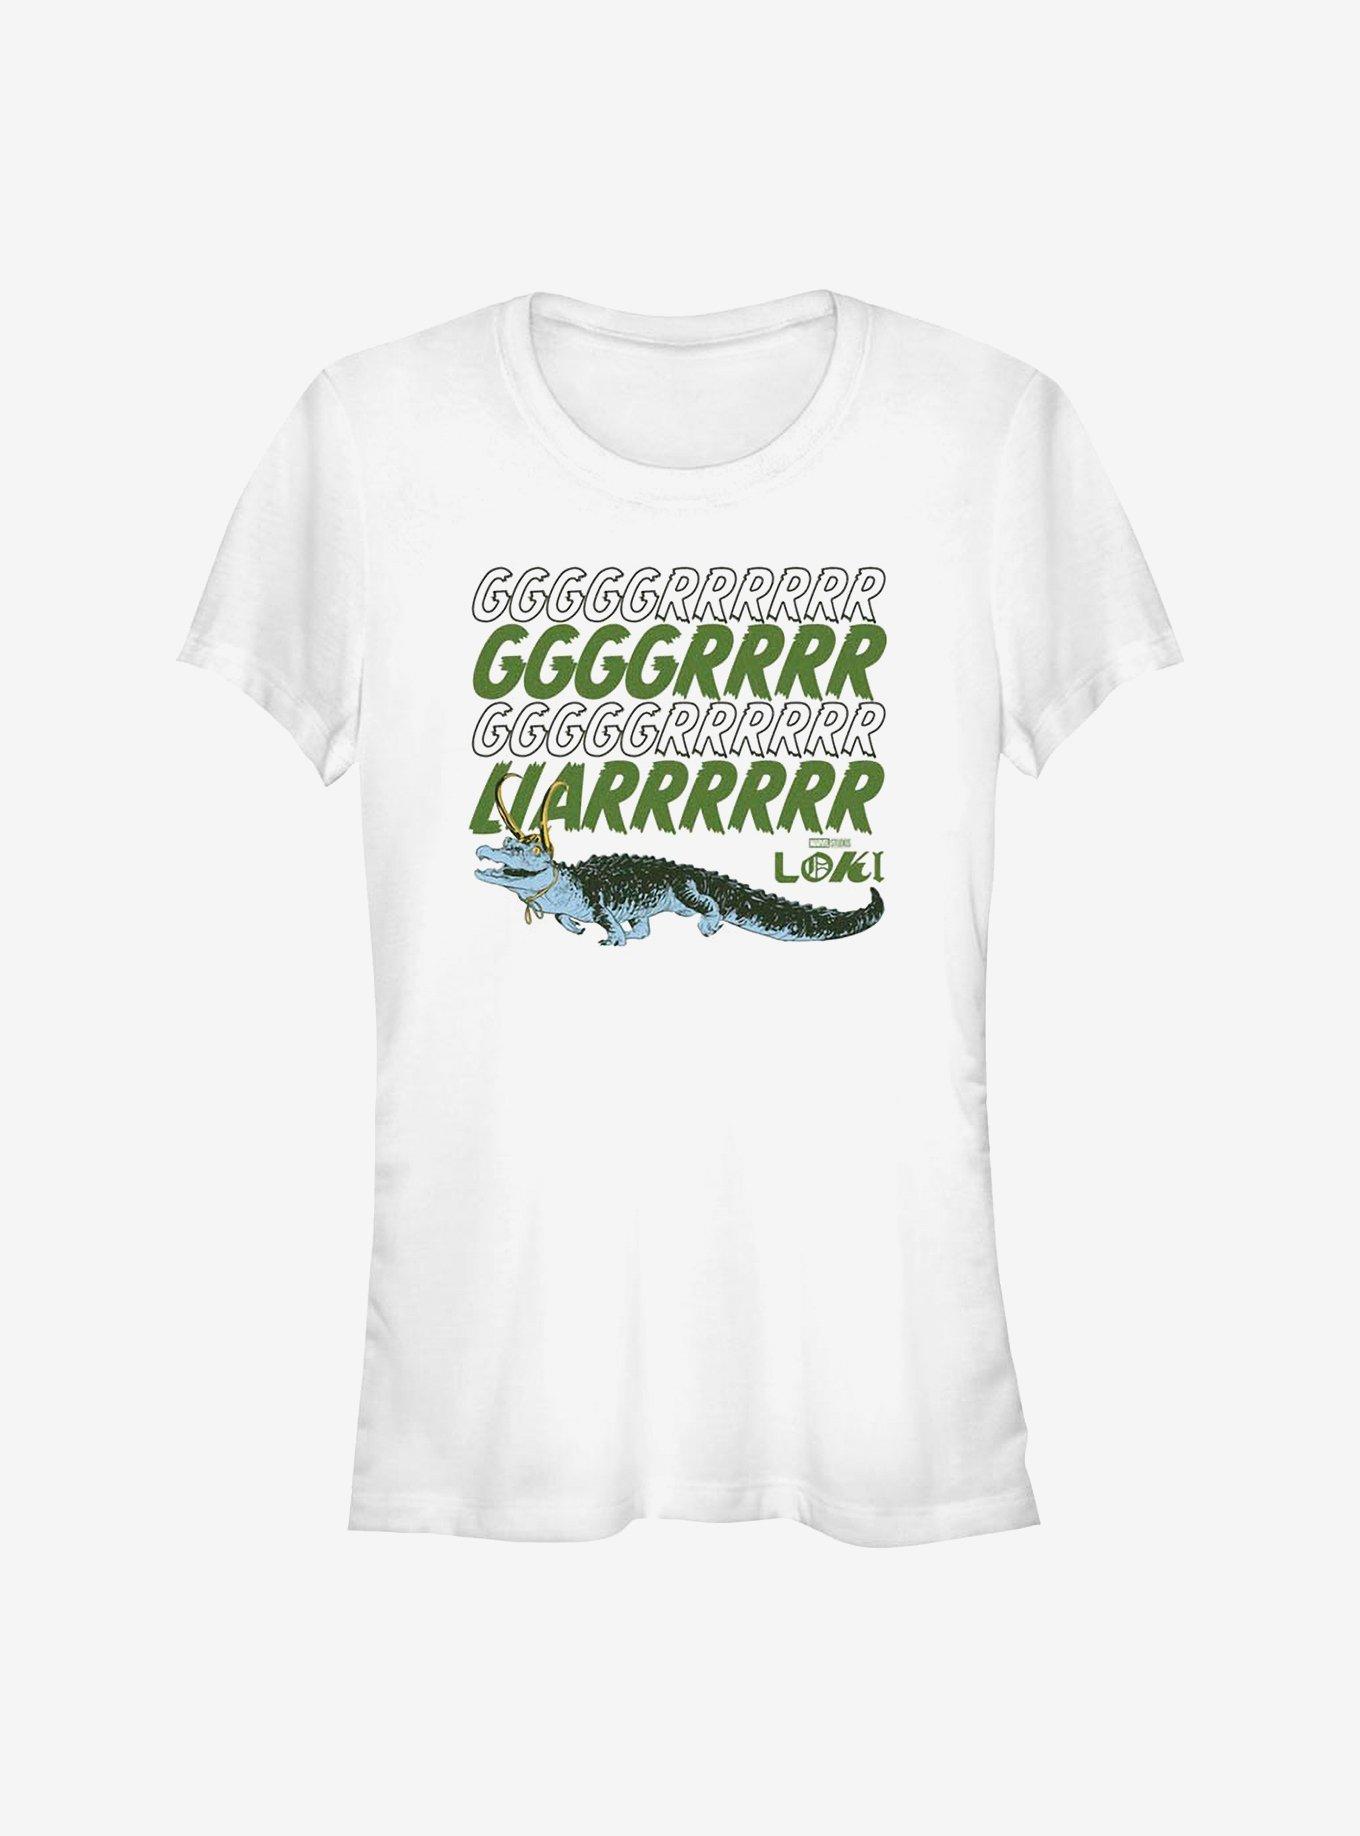 Marvel Loki Grrr Liar Alligator Girls T-Shirt, WHITE, hi-res